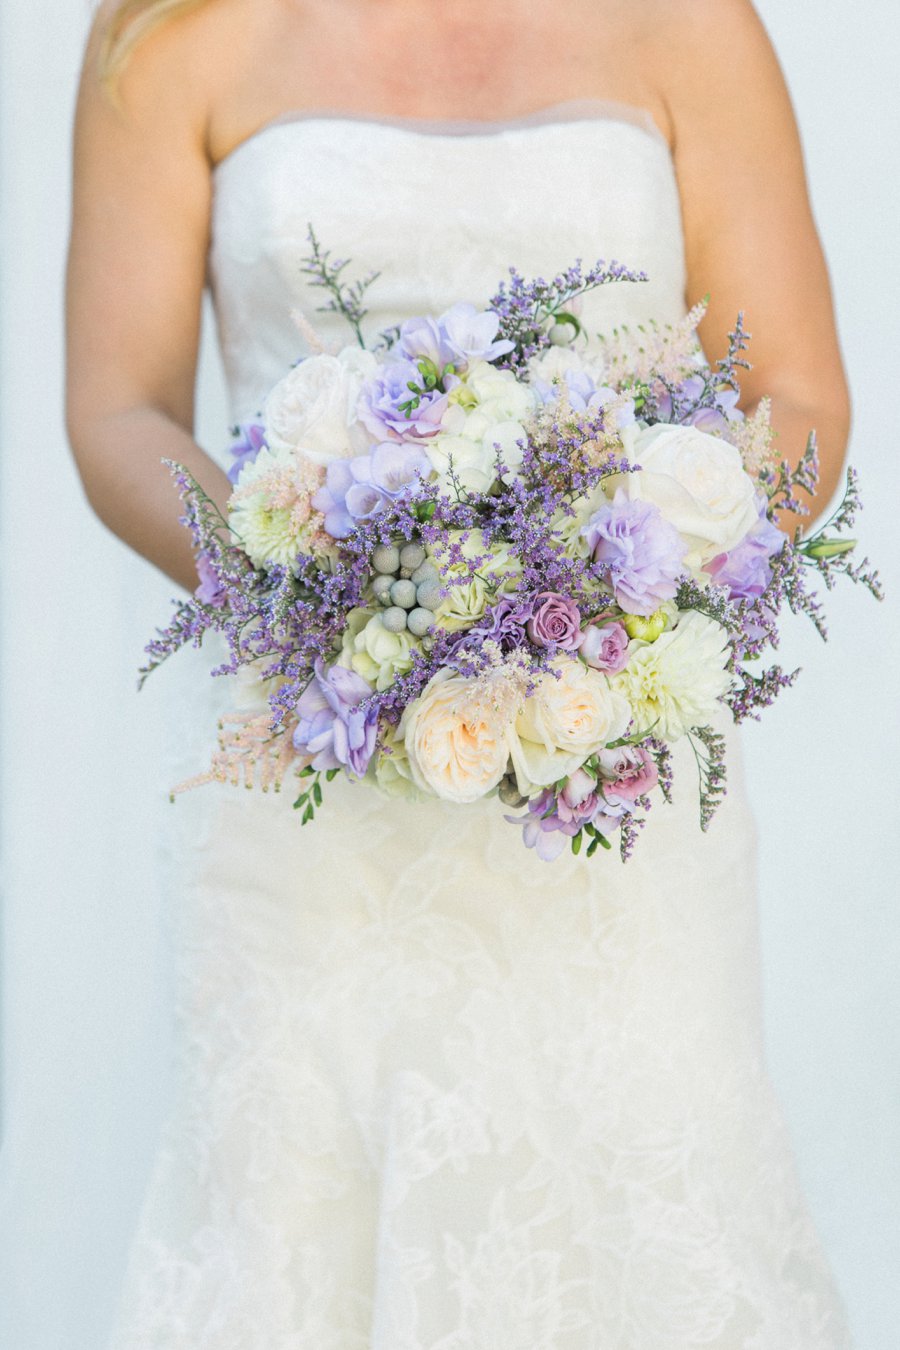 Lavender and White Florida Beach Wedding via TheELD.com